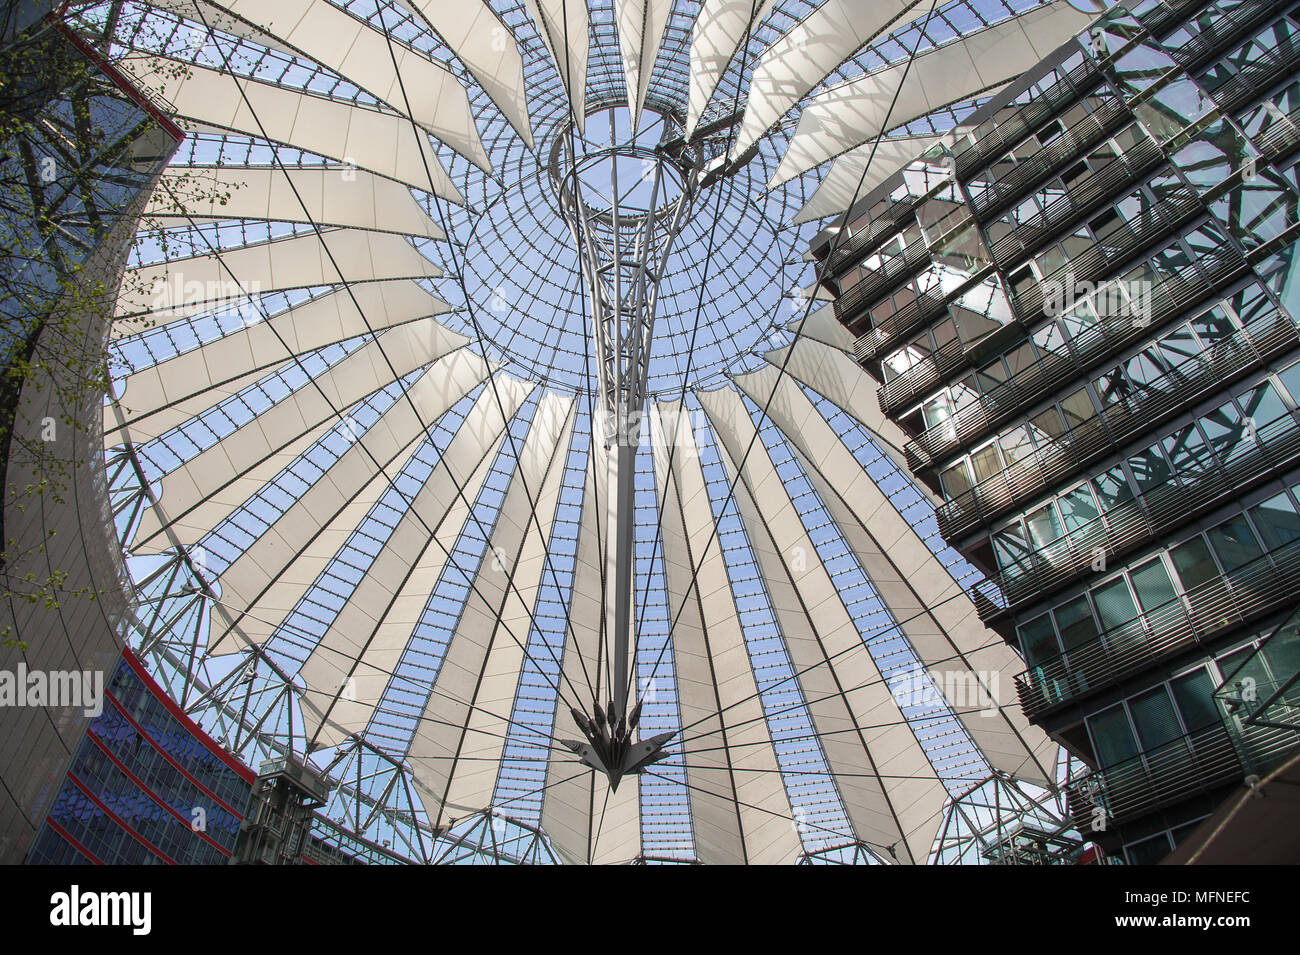 Toit spectaculaire du Sony Center de la Potsdamer Platz. Construction moderne de verre, d'acier et du textile voiles qui sont illuminés de nuit Banque D'Images